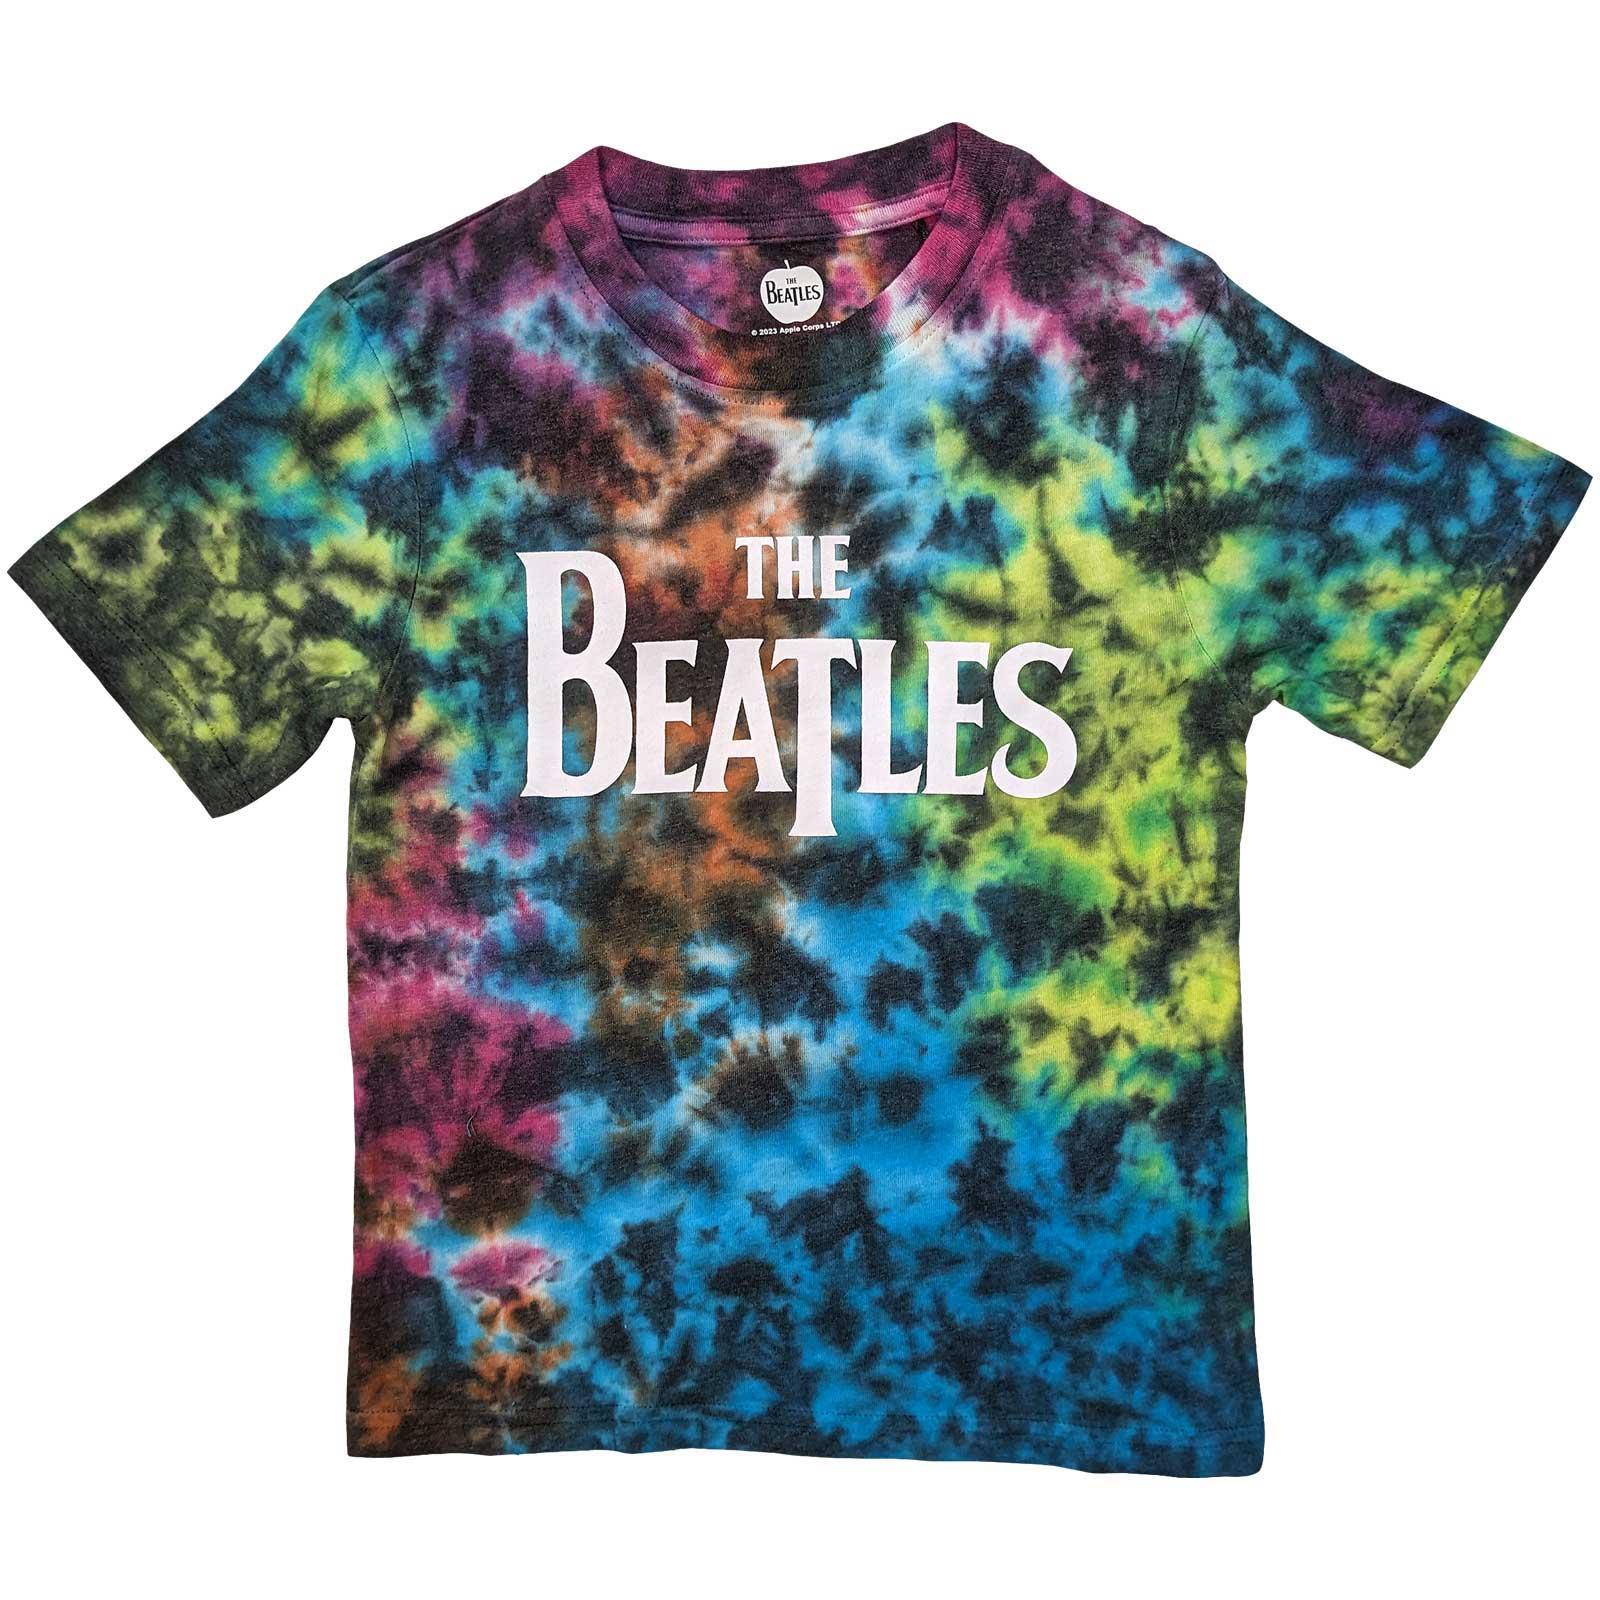 (ビートルズ) The Beatles オフィシャル商品 キッズ・子供 Drop T ロゴ Tシャツ タイダイ 半袖 トップス 【海外通販】